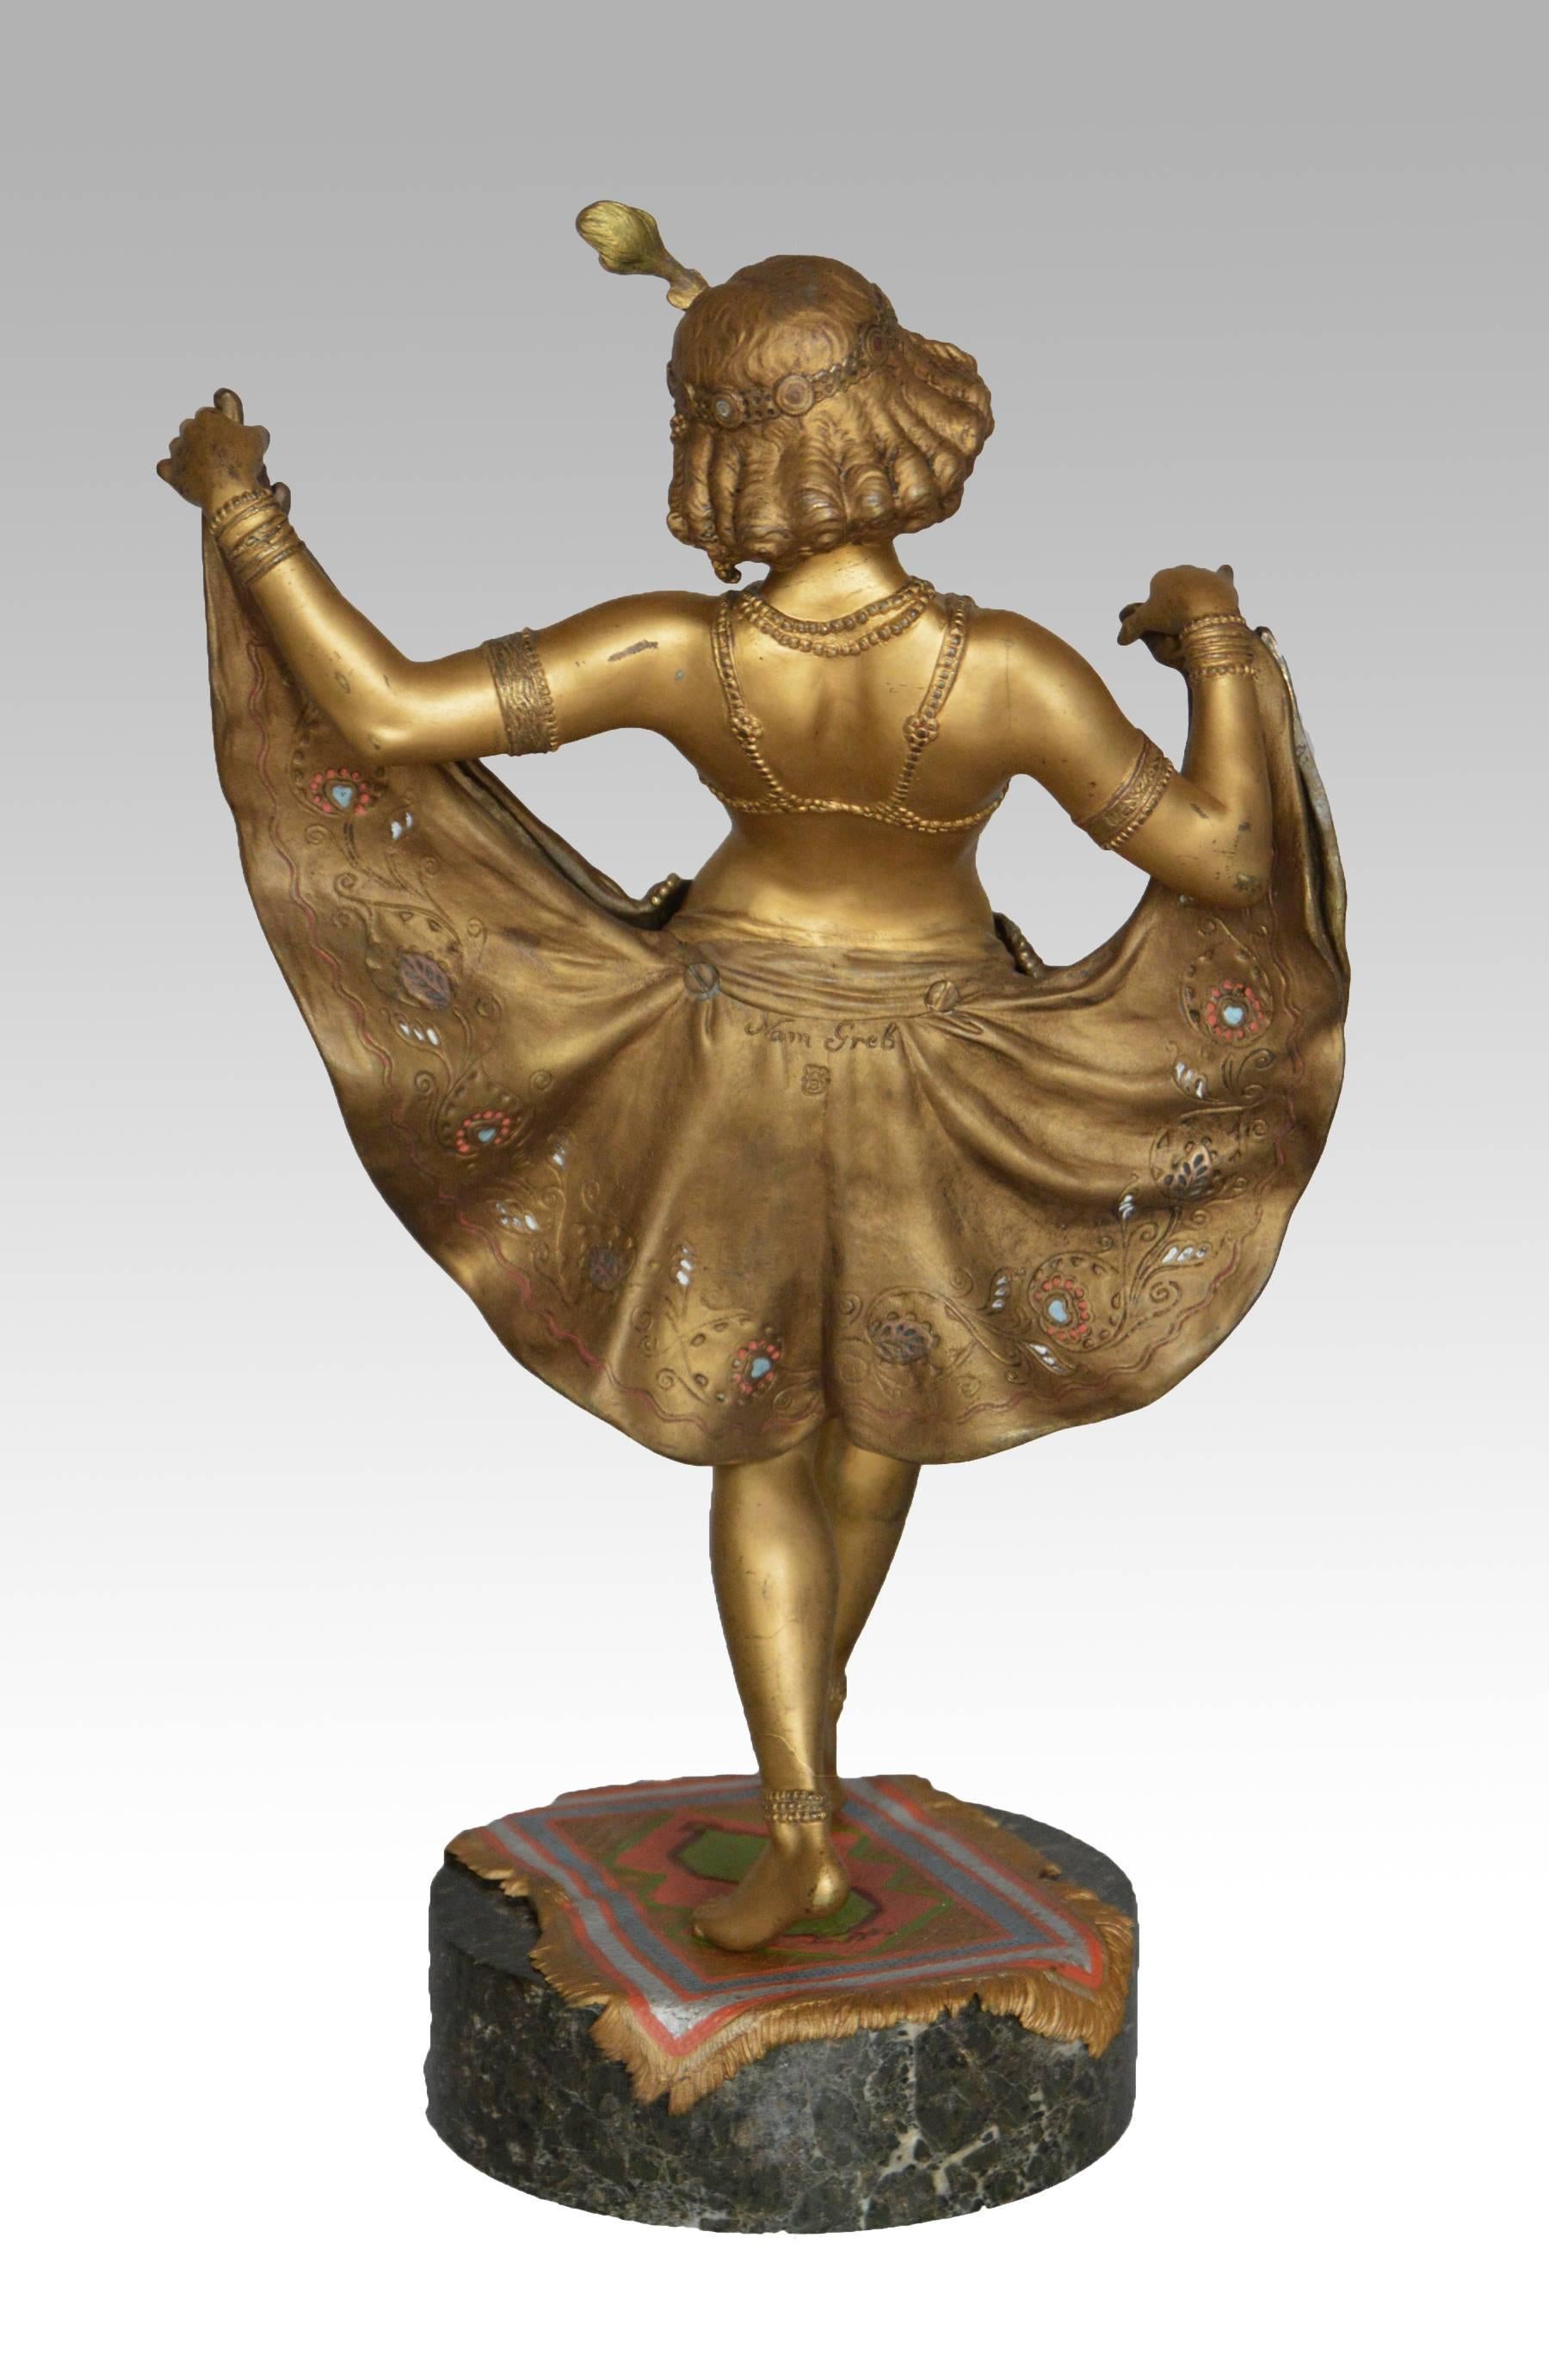 Franz Xaver Bergmann
Österreicher (1861-1936)
Bronze, signiert 'Nam Greb' & 'B' in einer Vase.
Höhe: 13½ Zoll 
Breite: 7¾ Zoll

Seltene, großformatige Version von 'Windy Day', einer erotischen Bronzefigur einer jungen Tänzerin, mit feinem,